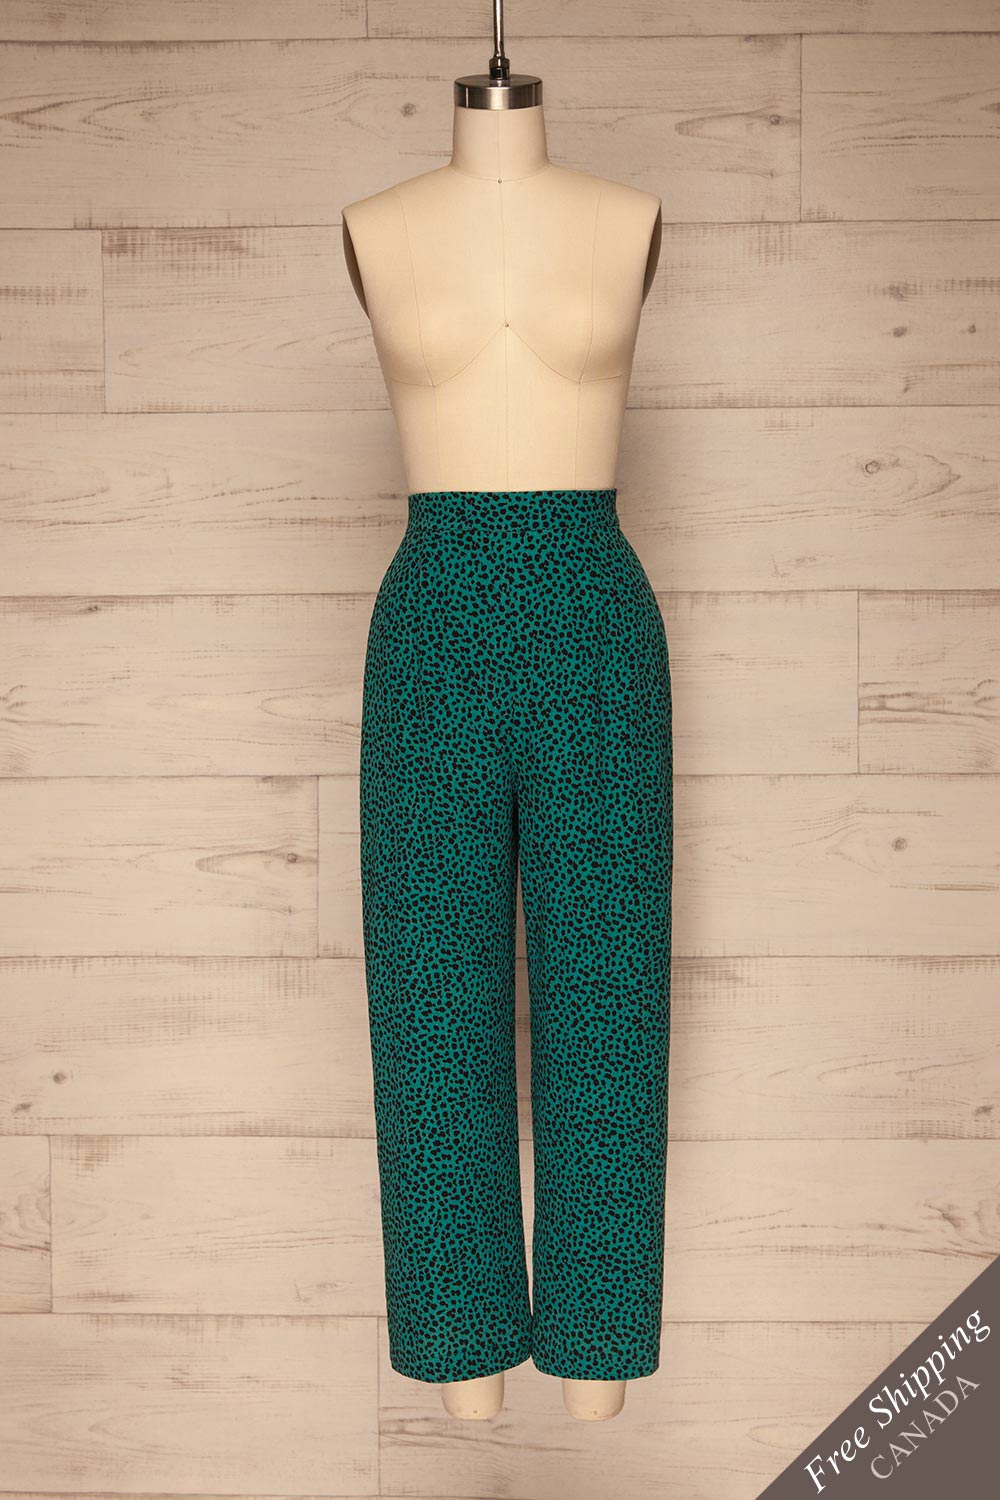 Canaveral Emerald Pants w/ Leopard Print | La petite garçonne front view